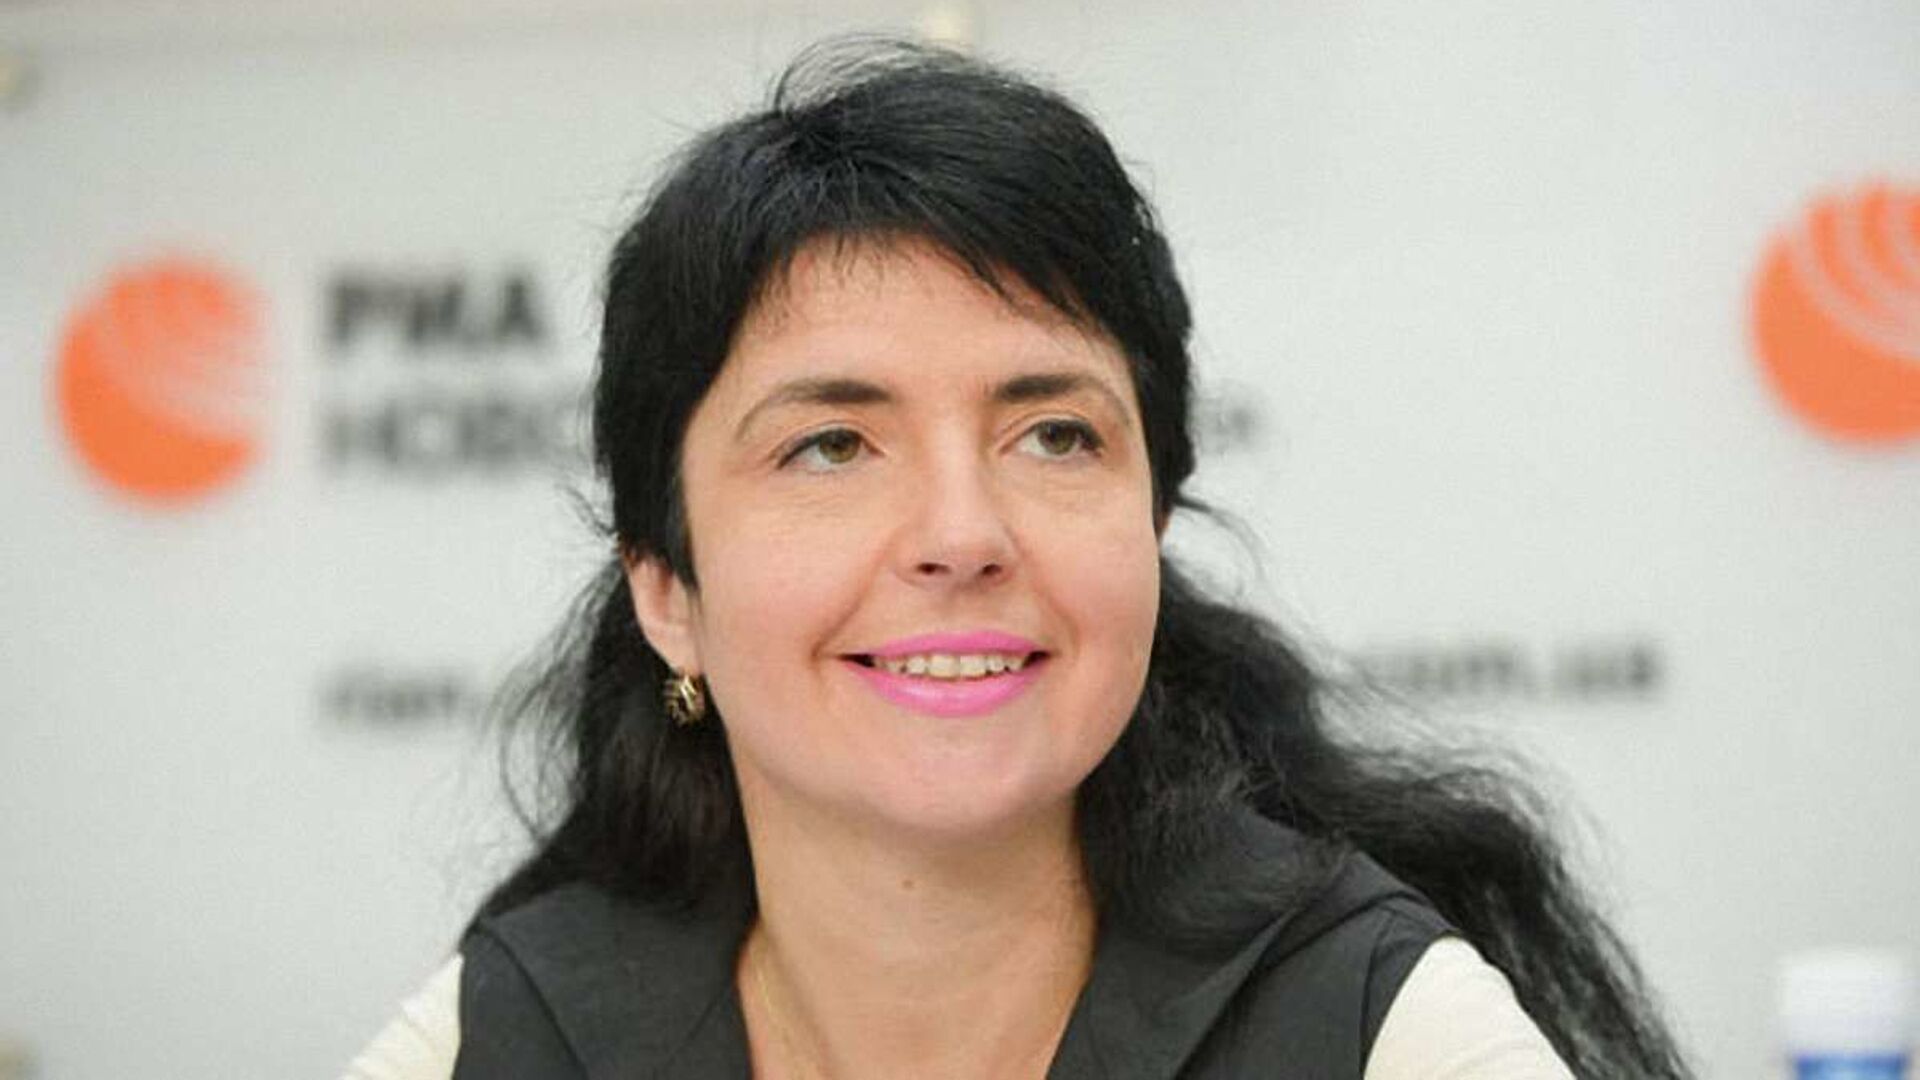 Янина Соколовская: биография украинского журналиста